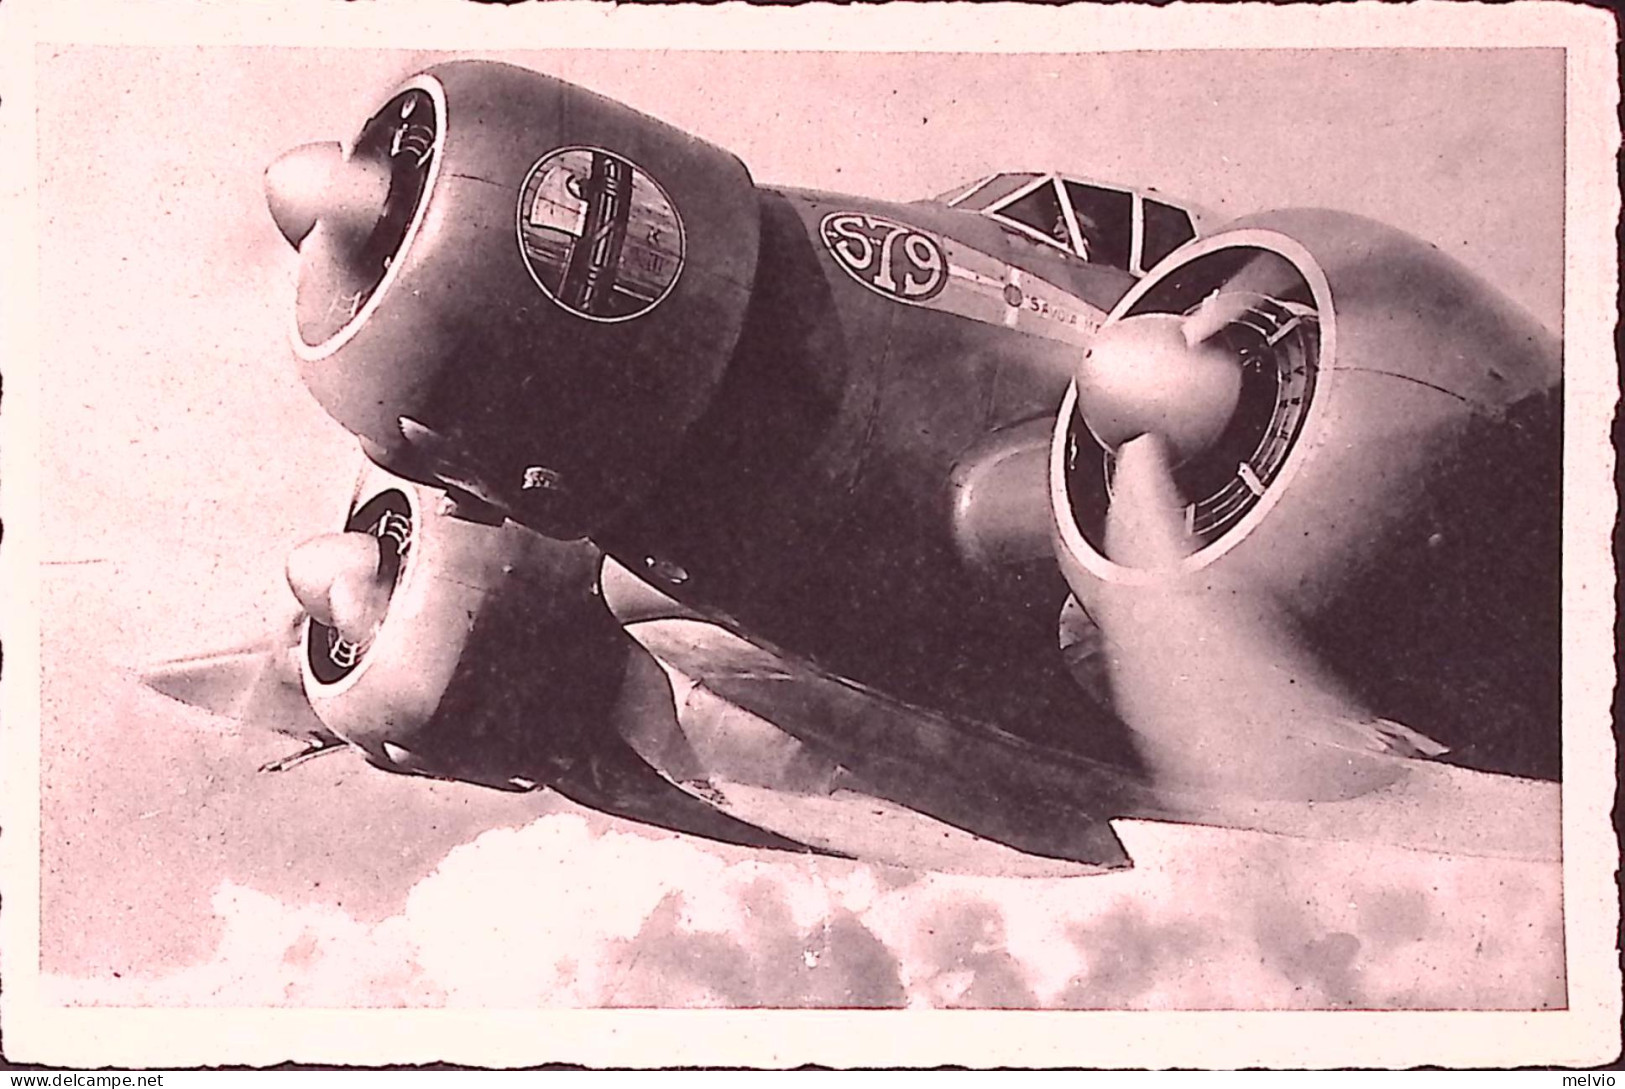 1940-AVIAZIONE MILITARE ITALIANA Un Bombardiere In Pieno Volo, Nuova - Patriotiques